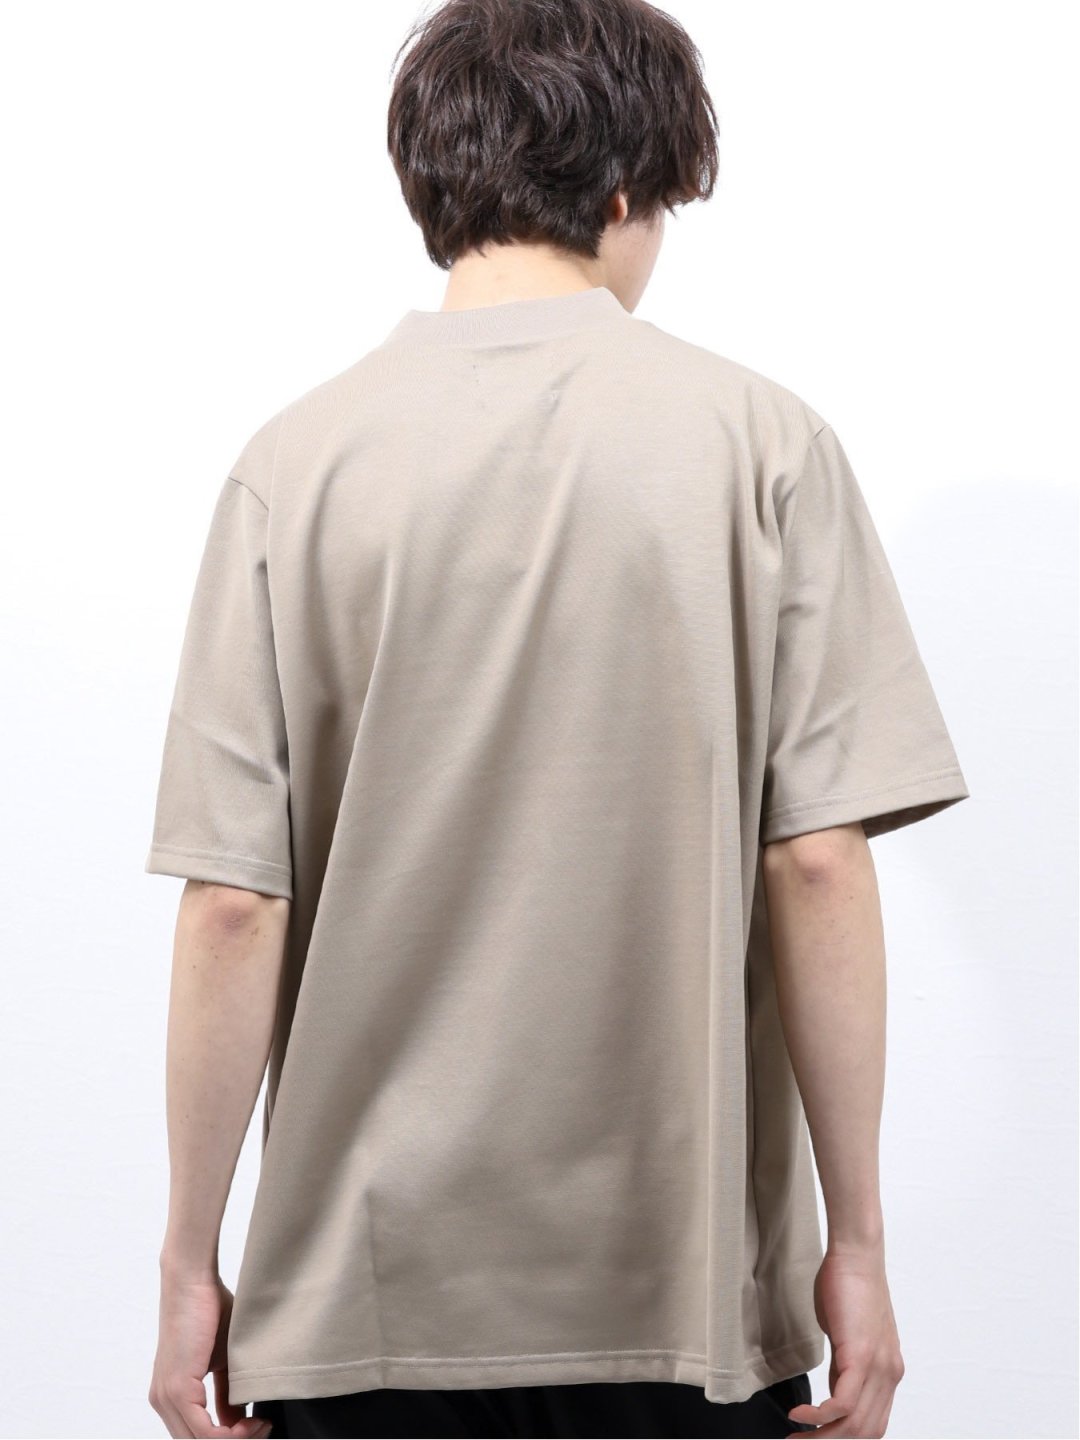 MADE IN JAPAN ULTIMA 天竺無地モックネックBIG半袖Tシャツ(M 33ベージュ): トップス | TAKA-Q